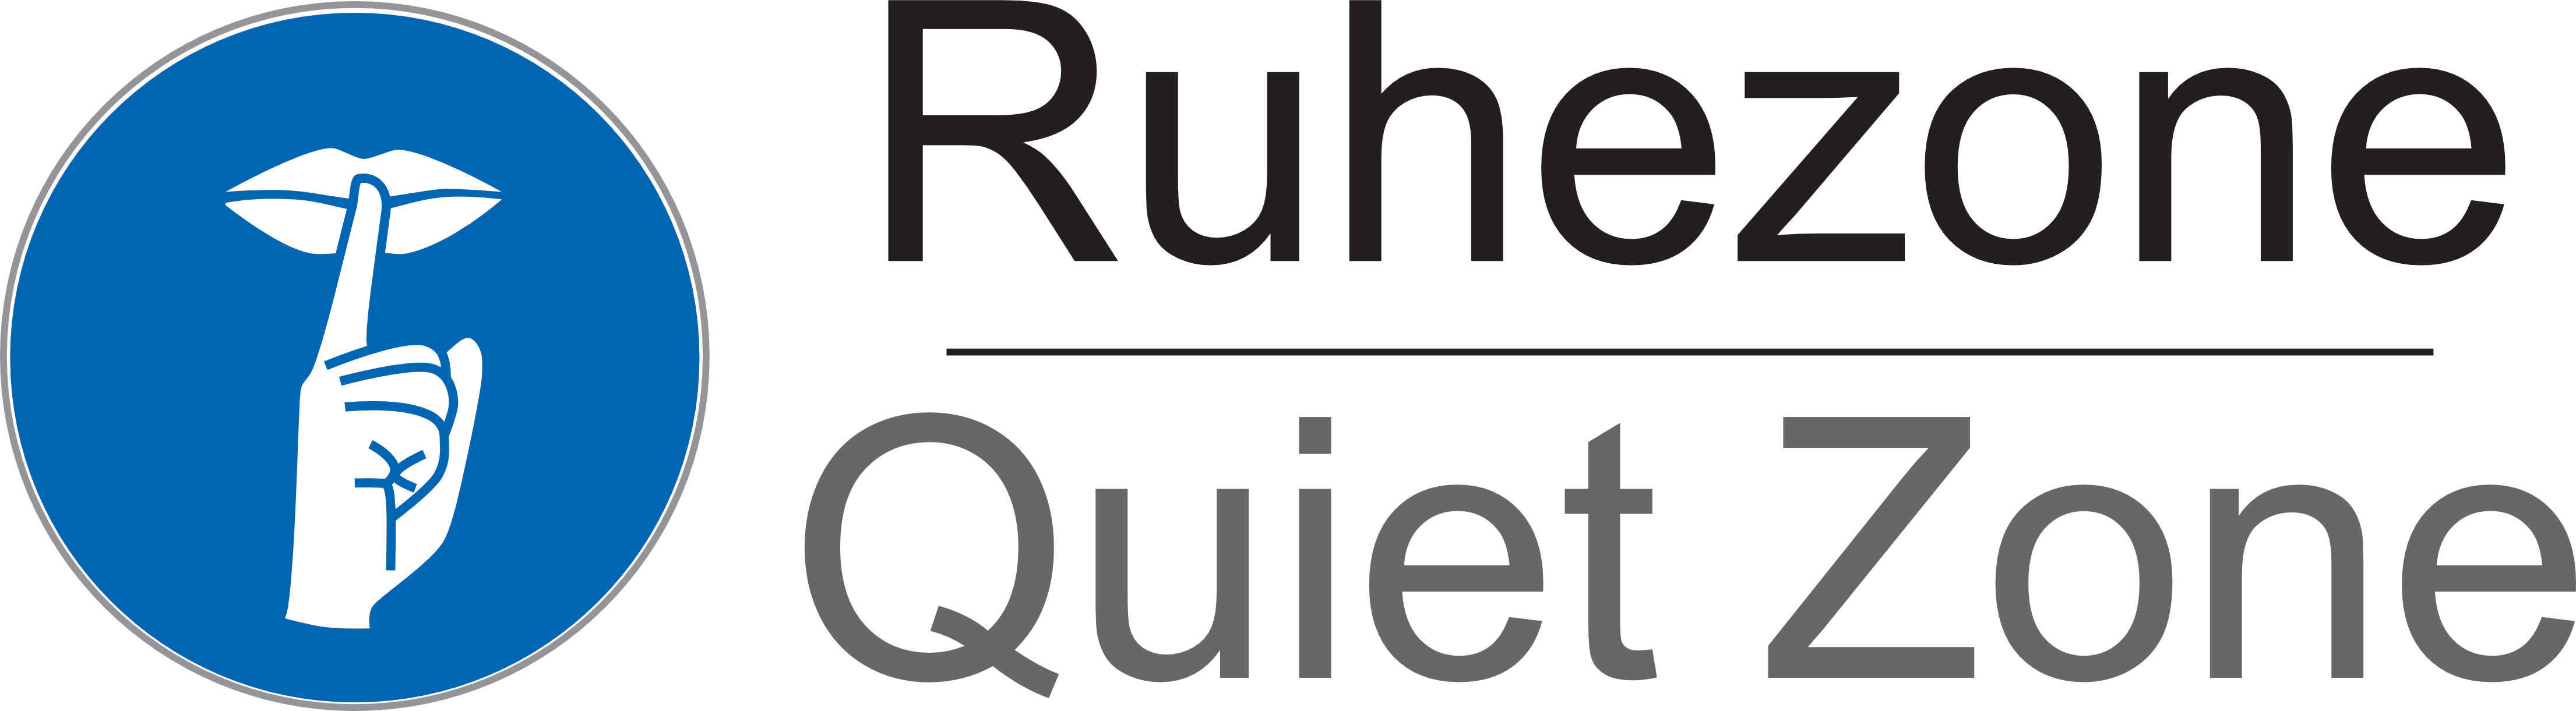 Ein blaues Icon mit einem Finger vor dem Mund und der Text "Ruhezone/Quiet zone"